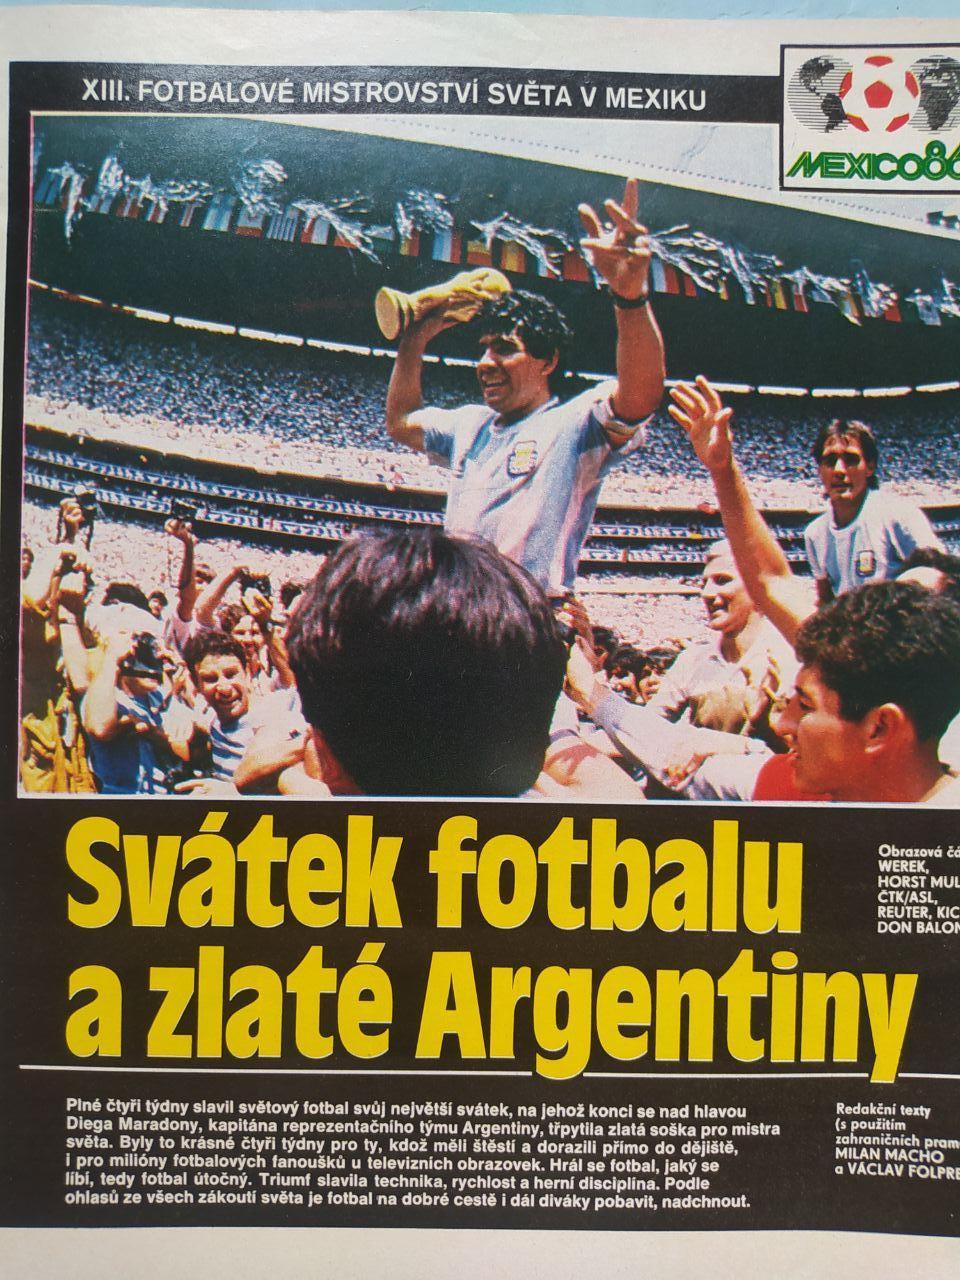 Спецвыпуск Стадион Чехия № 30 за 1986 г. посвящен чм футбол в Мексике 1986 г. 1